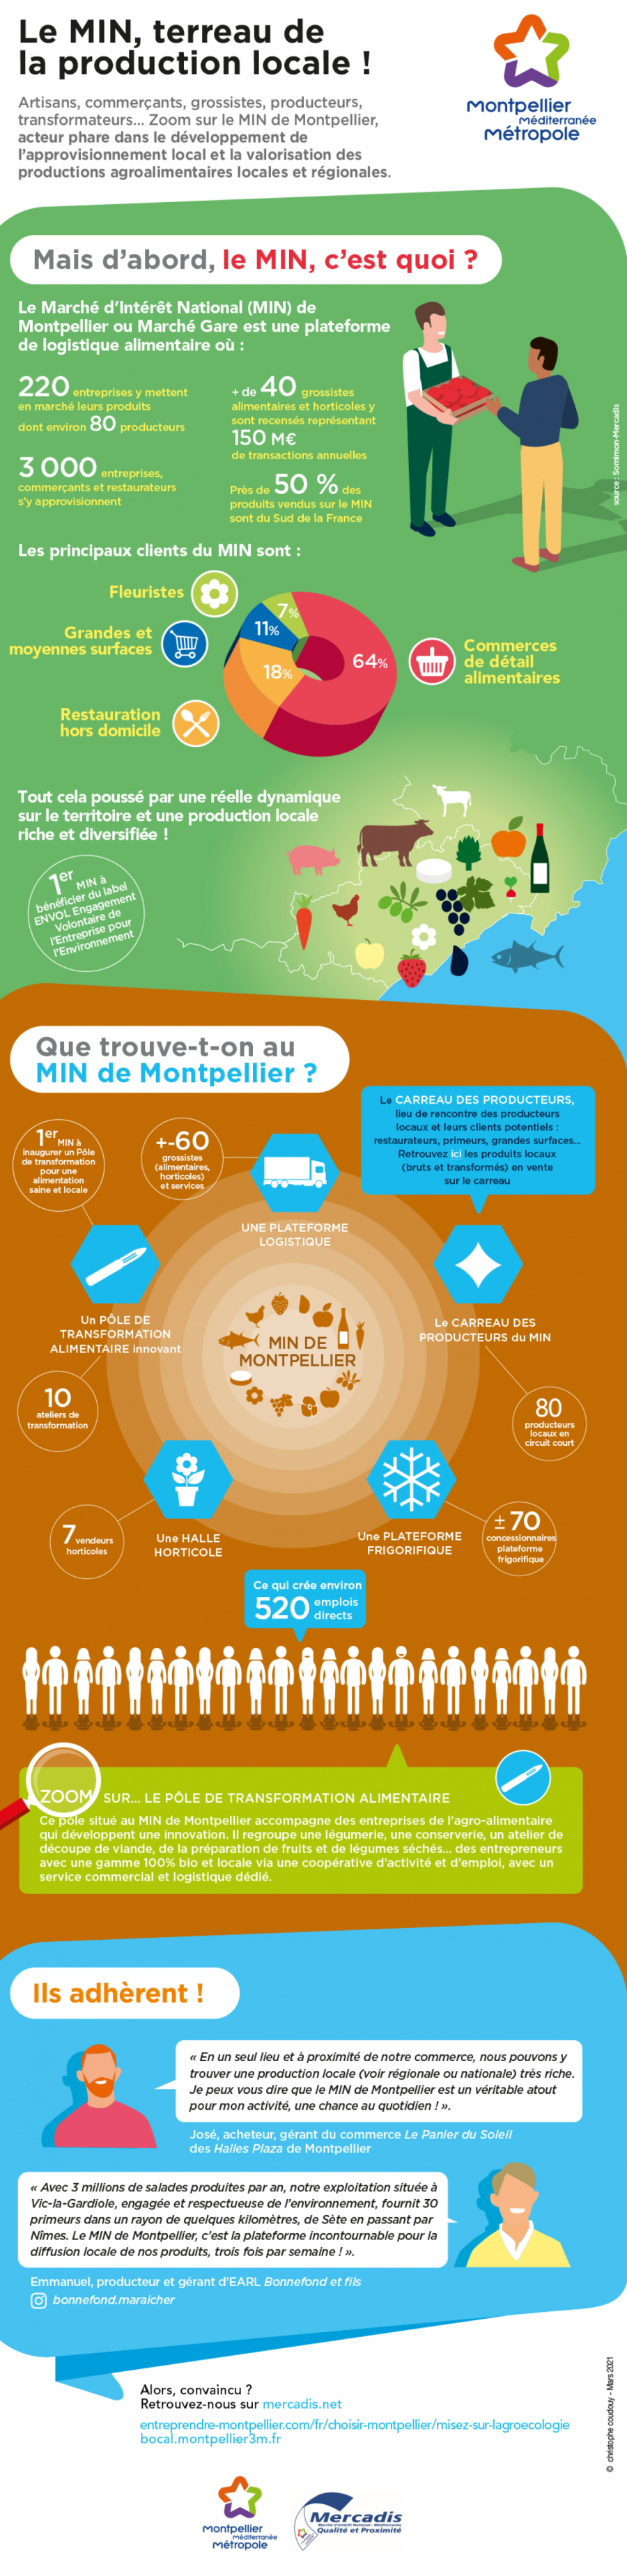 Infographie sur le MIN de Montpellier